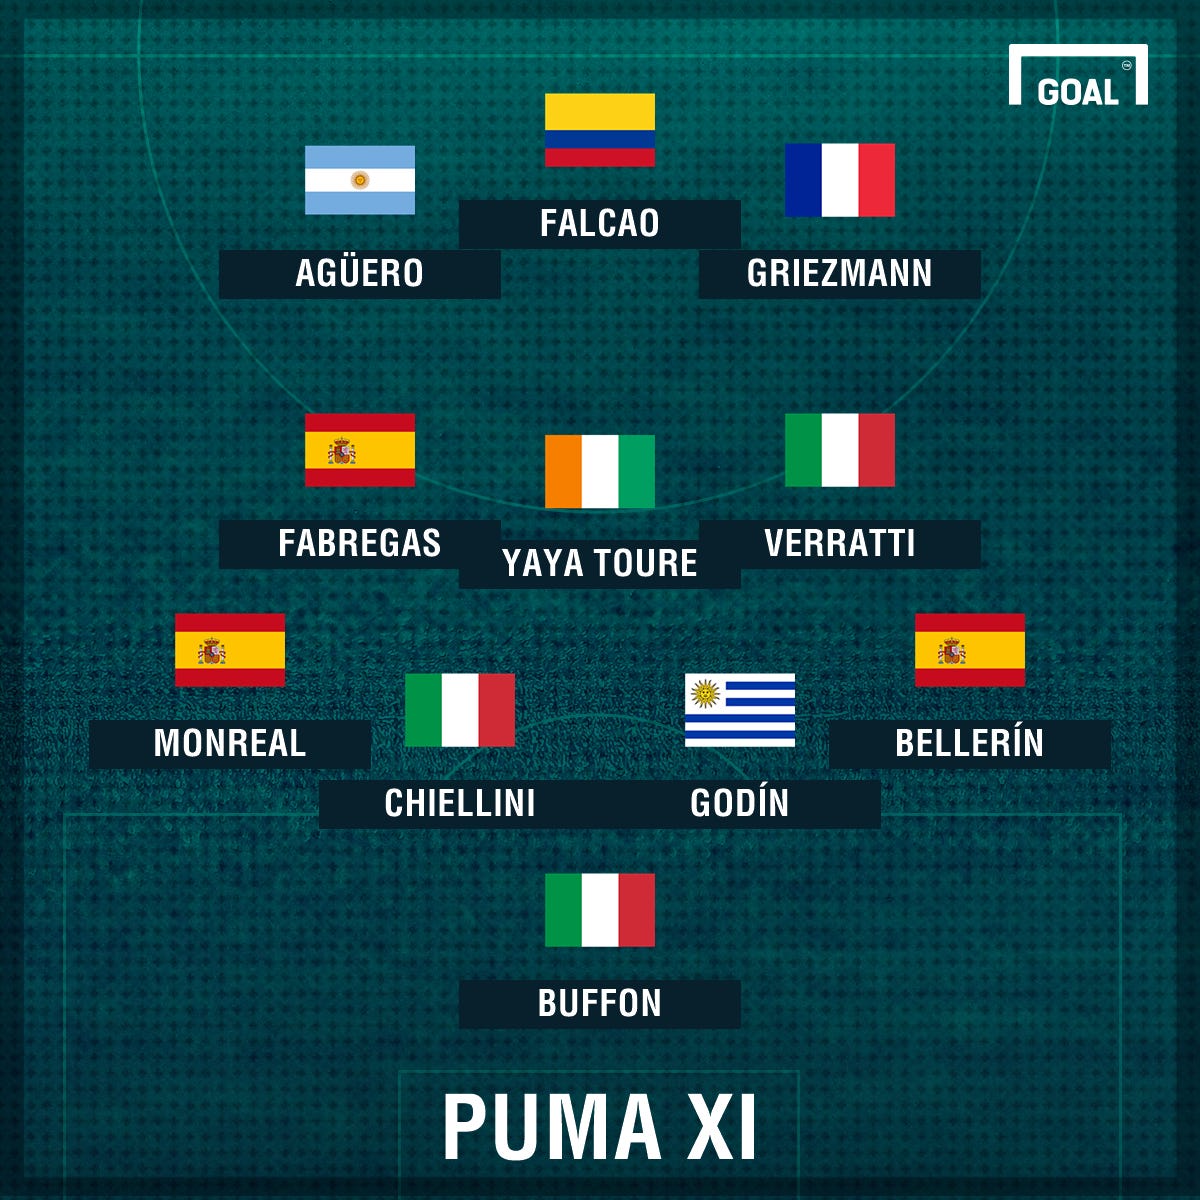 Agüero el once ideal jugadores que Puma | Goal.com Espana